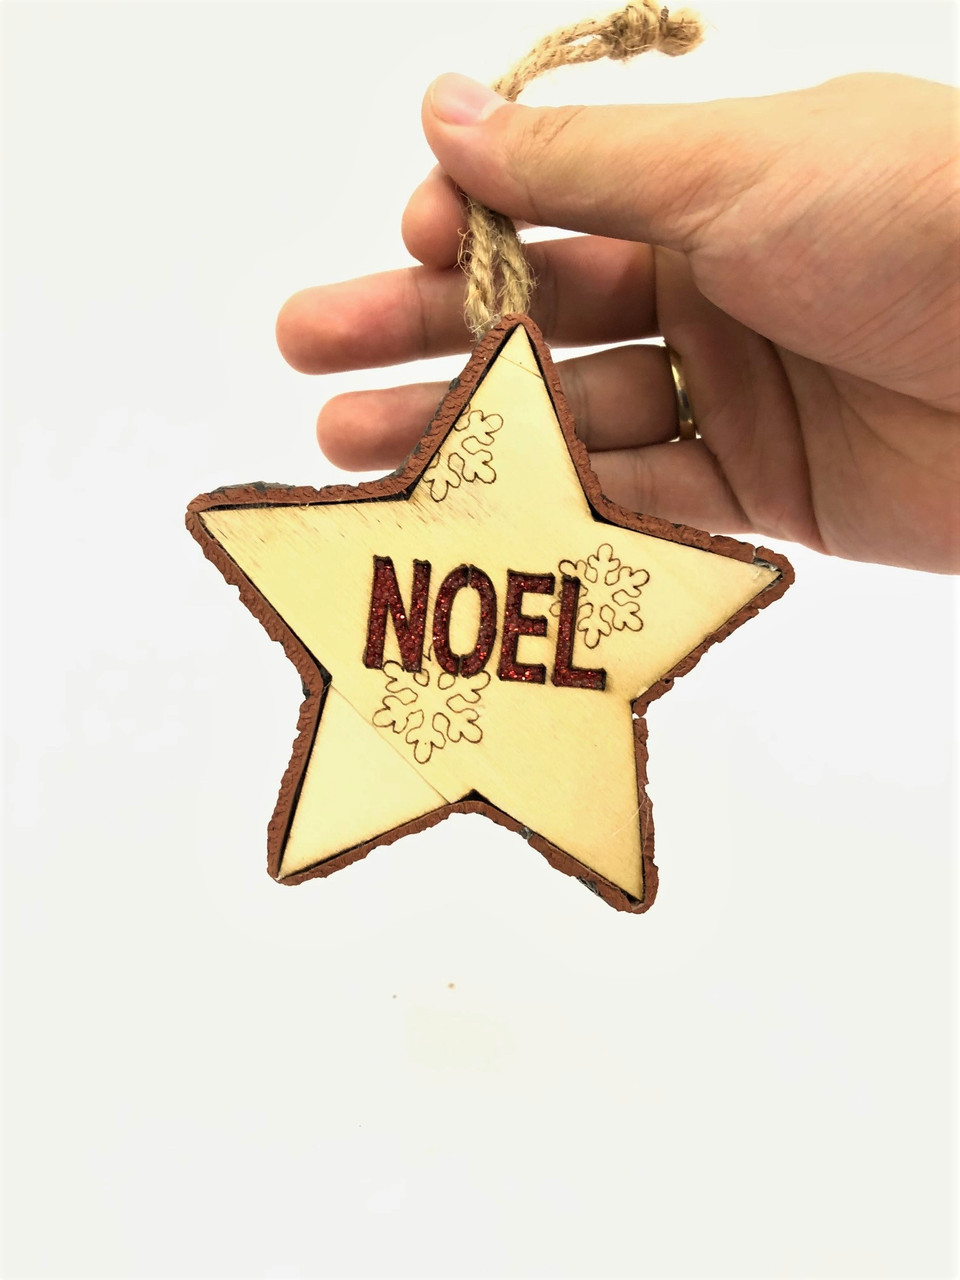 Light up Christmas Tree Ornament "NOEL" - 11cm